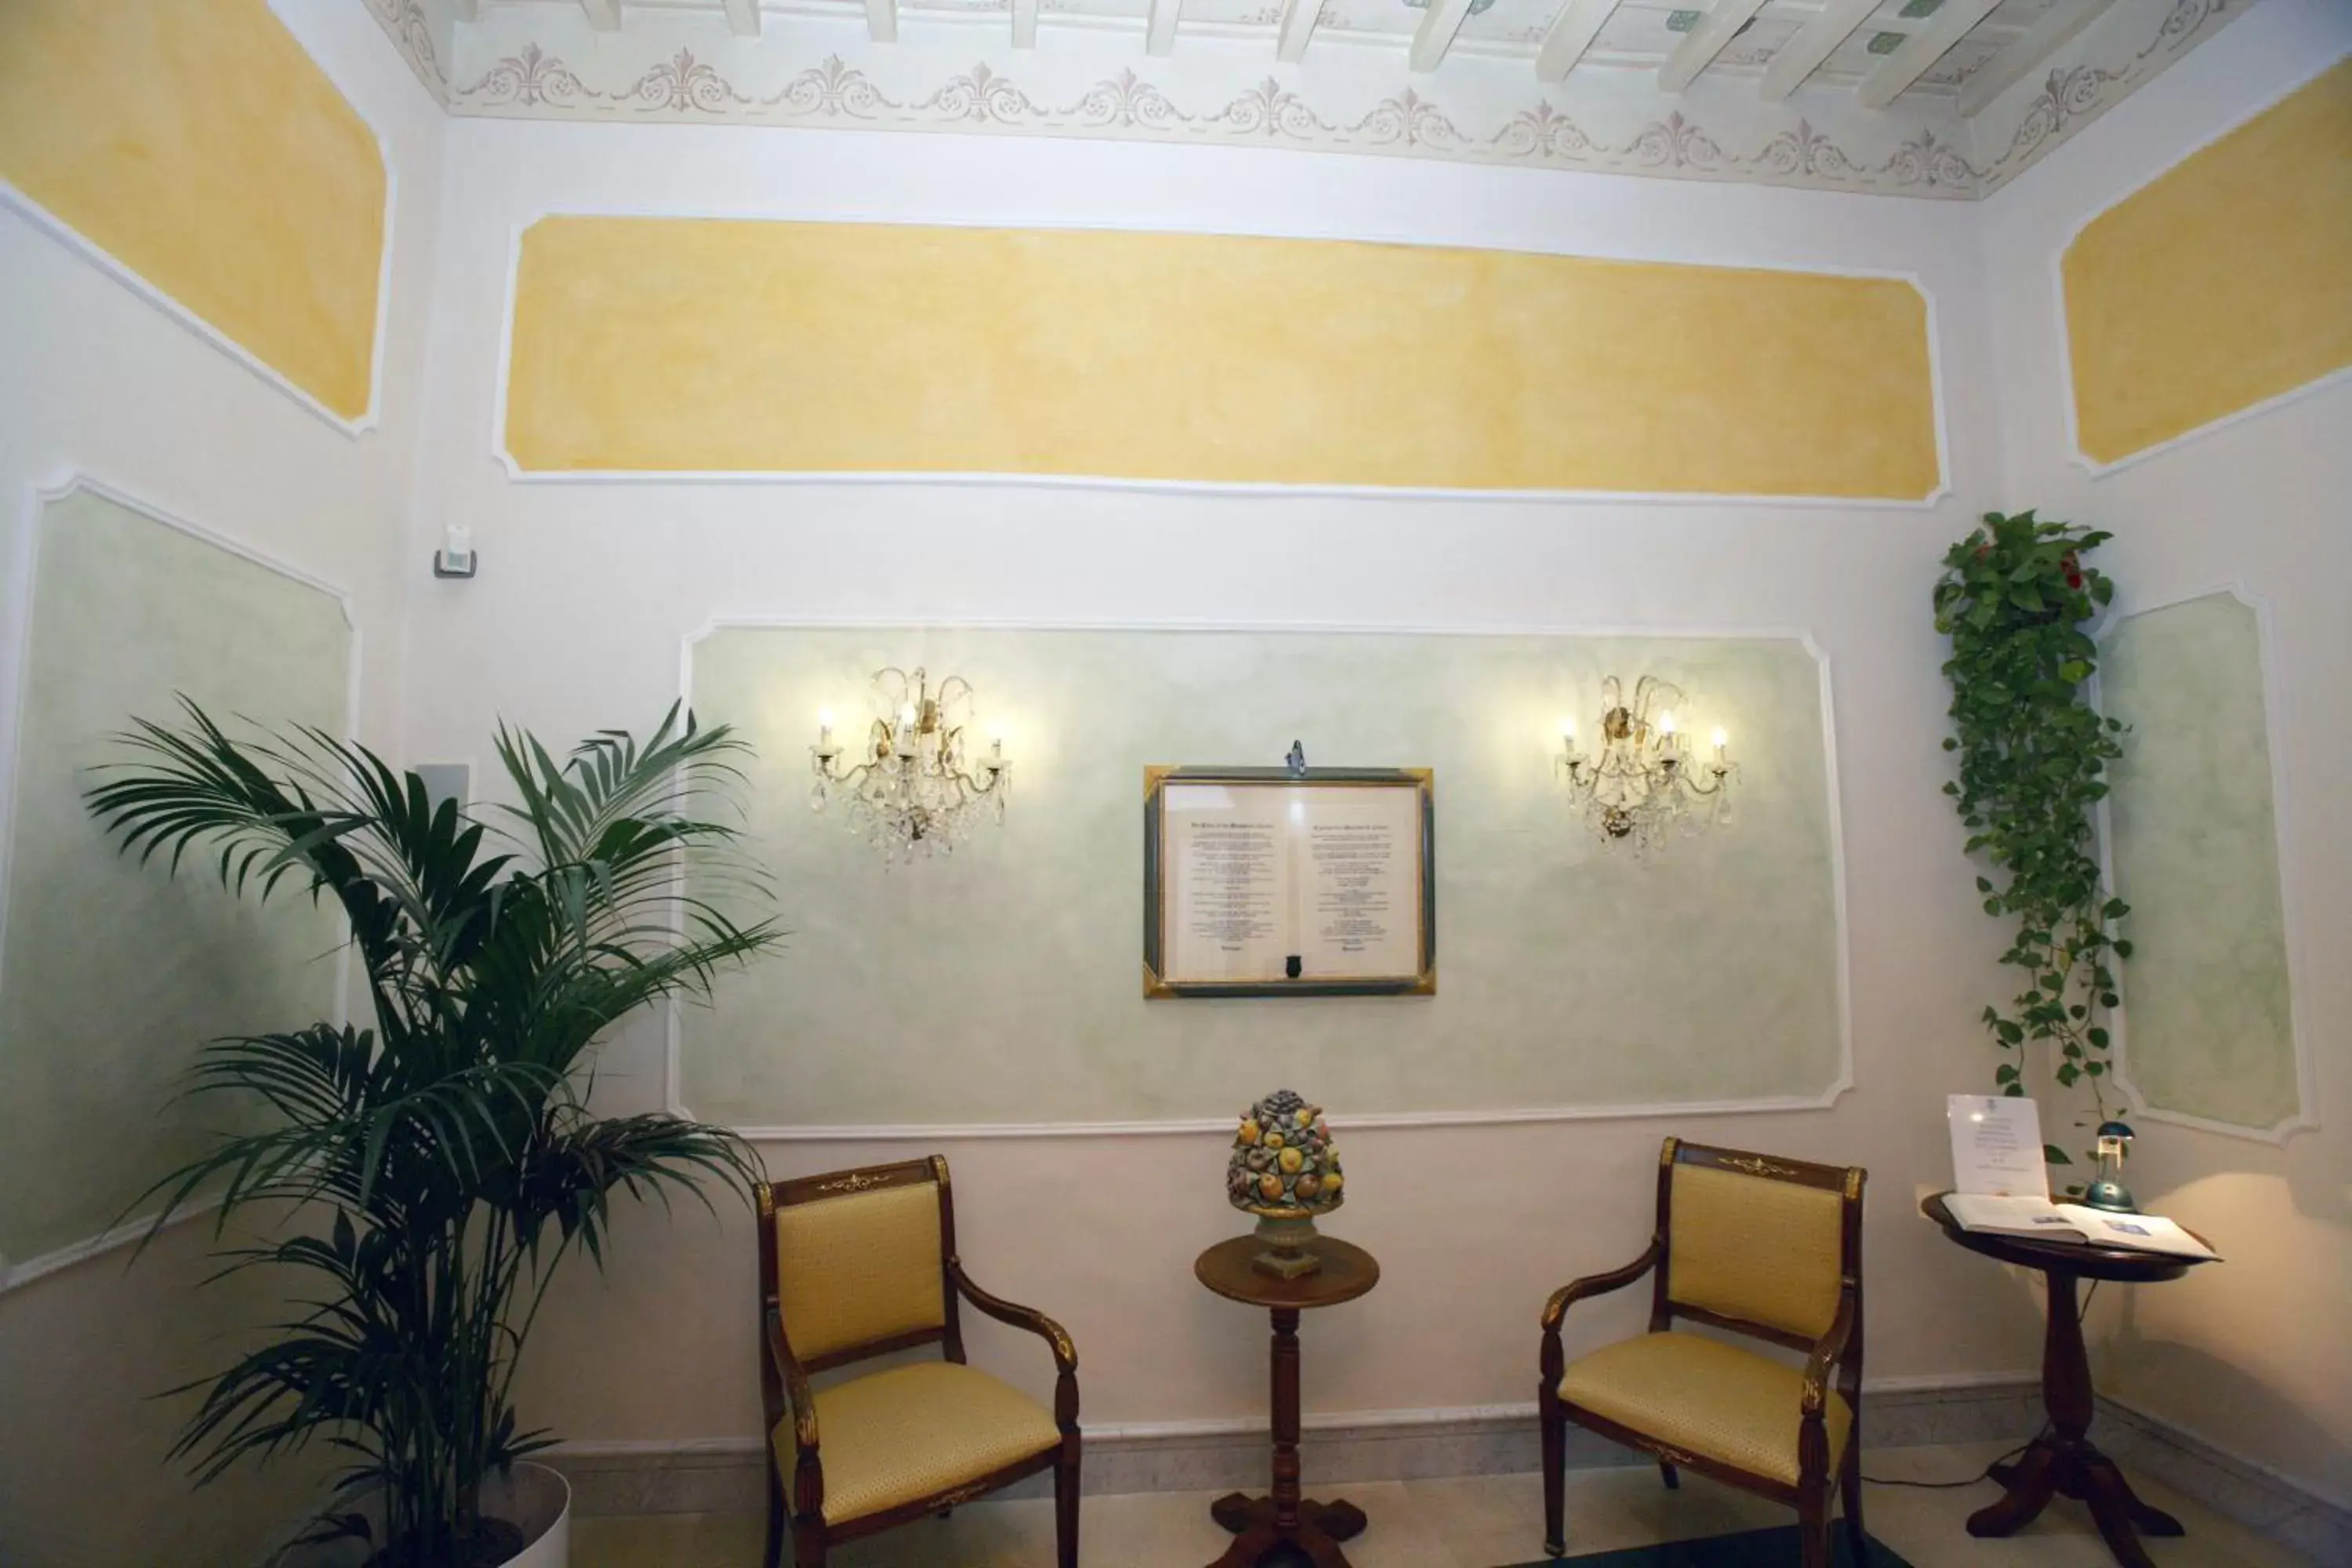 Decorative detail in Domus Florentiae Hotel